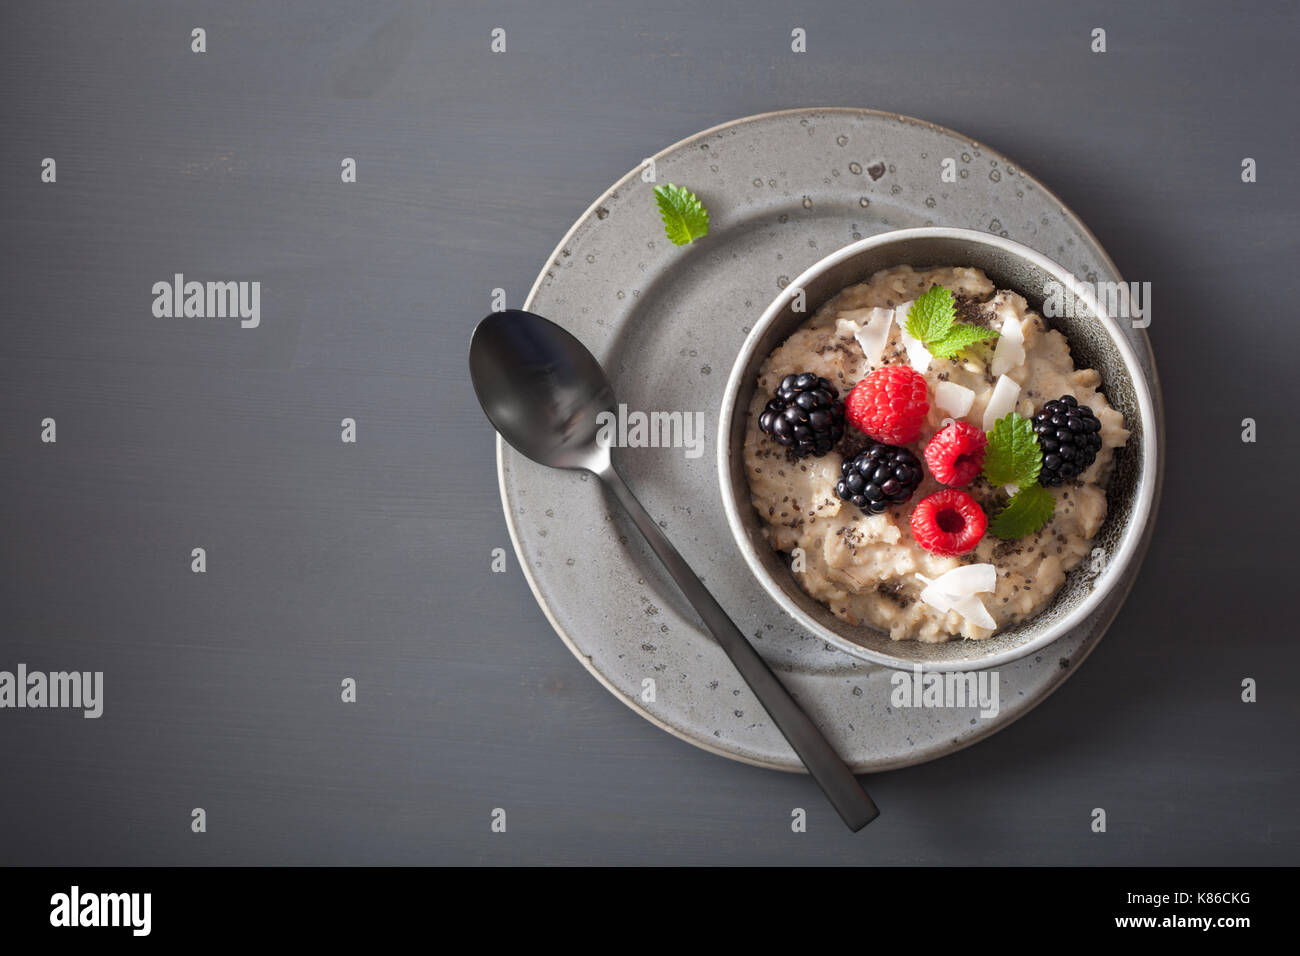 Sana colazione fiocchi d'avena porridge con lampone blackberry Foto Stock